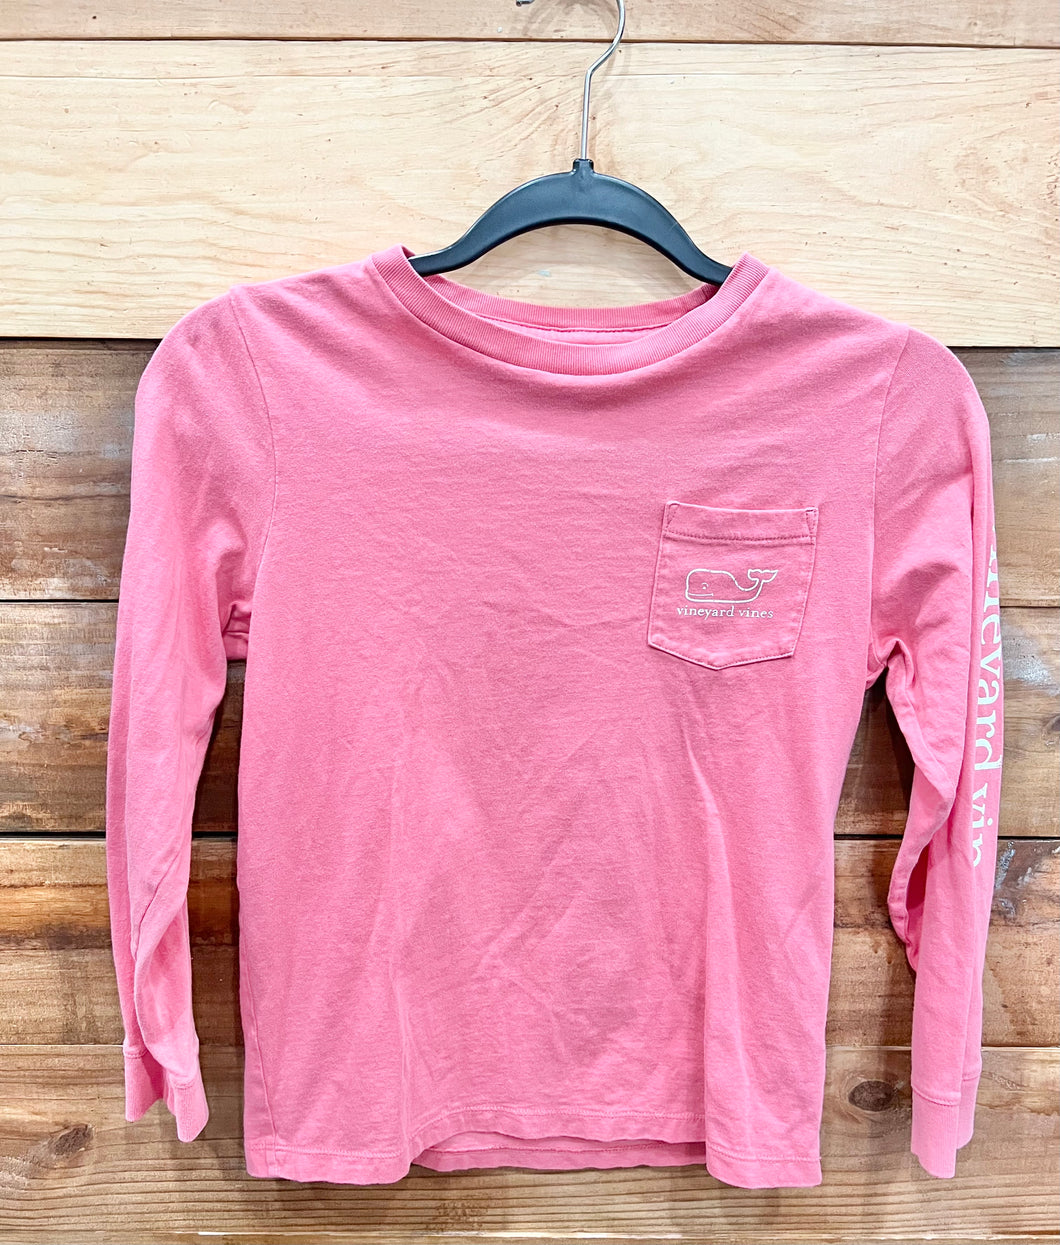 Vineyard Vines Pink Shirt Size 8-10